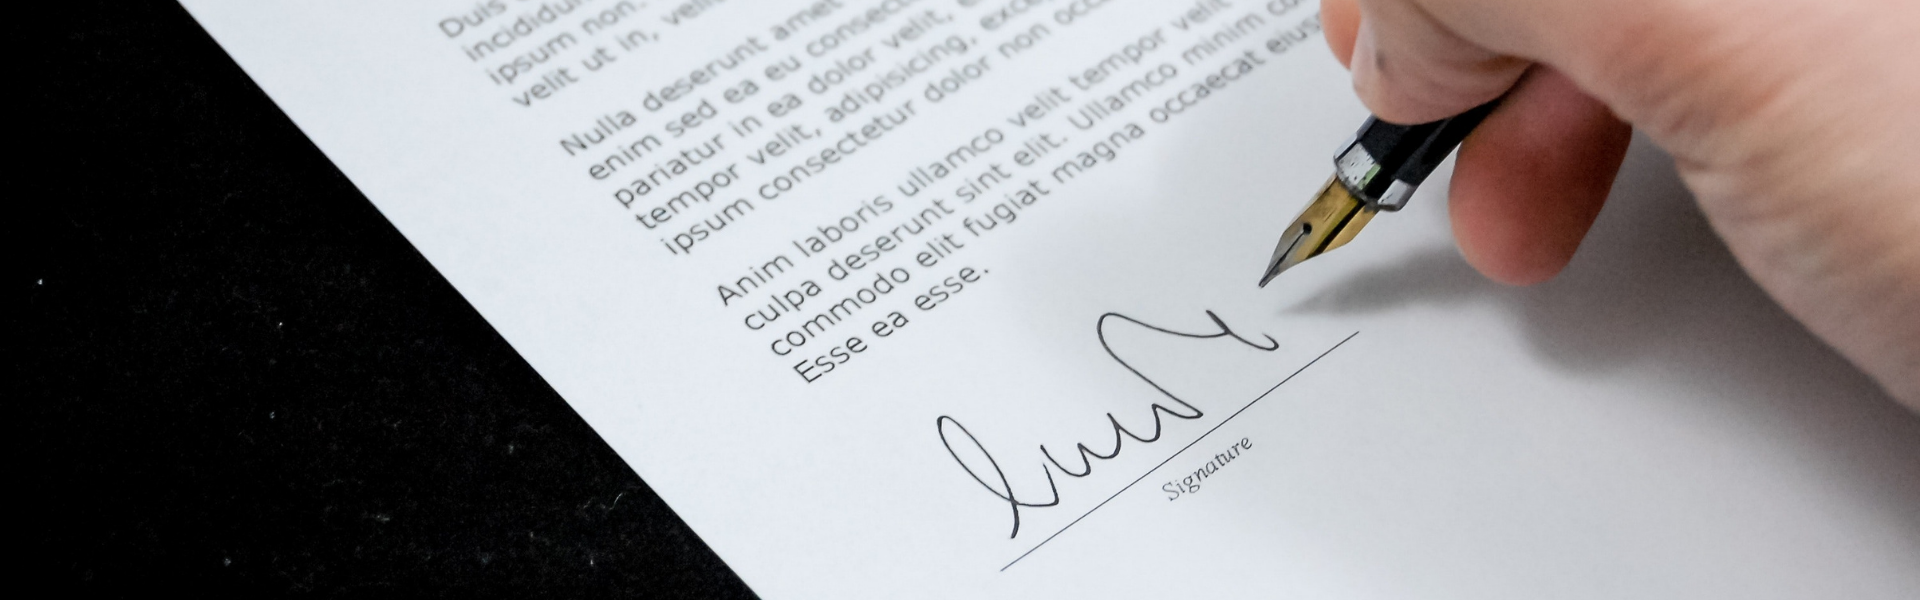 Persona firmando - Cómo hacer una firma digital - CertificadoElectronico.es